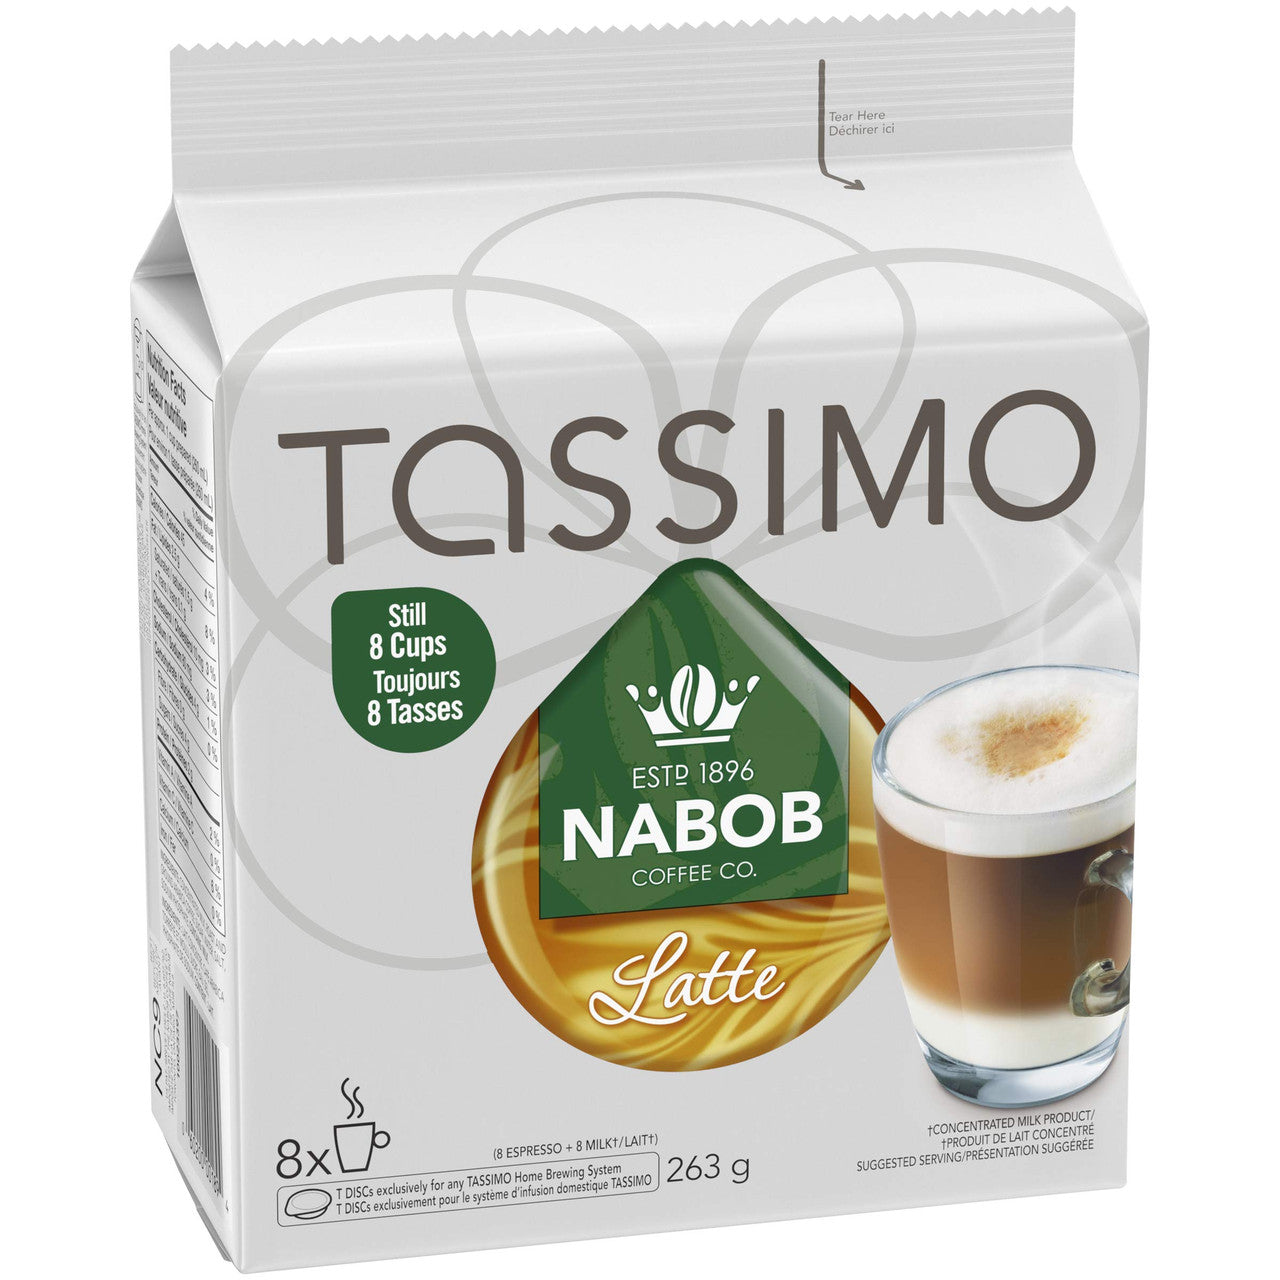 Café dosettes café au lait t-discs, Tassimo (x 21)